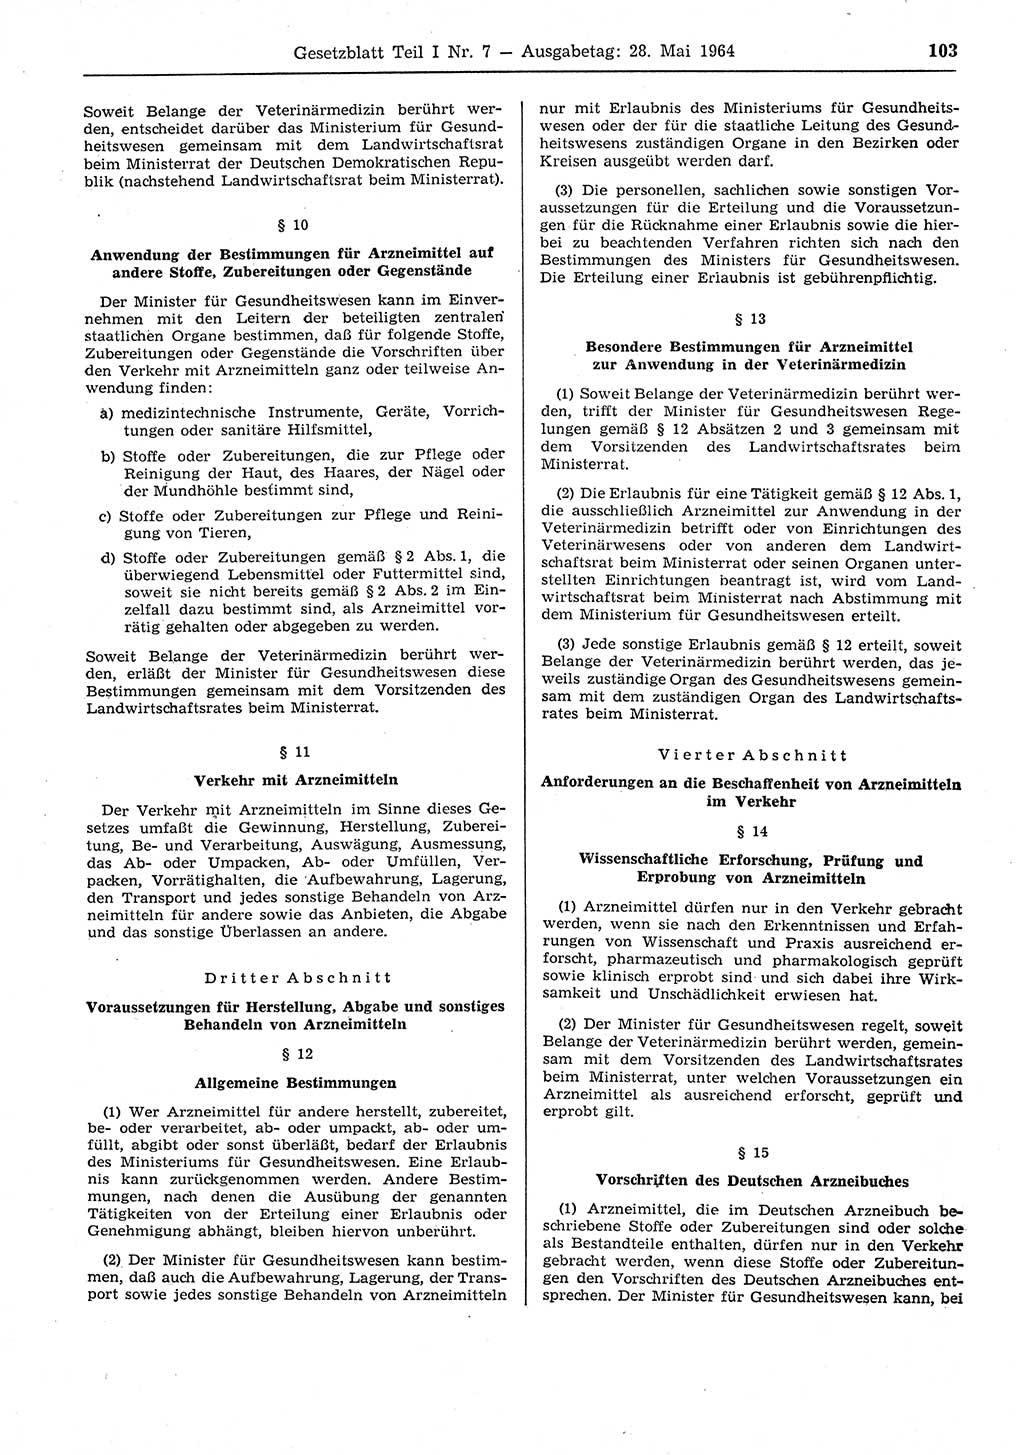 Gesetzblatt (GBl.) der Deutschen Demokratischen Republik (DDR) Teil Ⅰ 1964, Seite 103 (GBl. DDR Ⅰ 1964, S. 103)